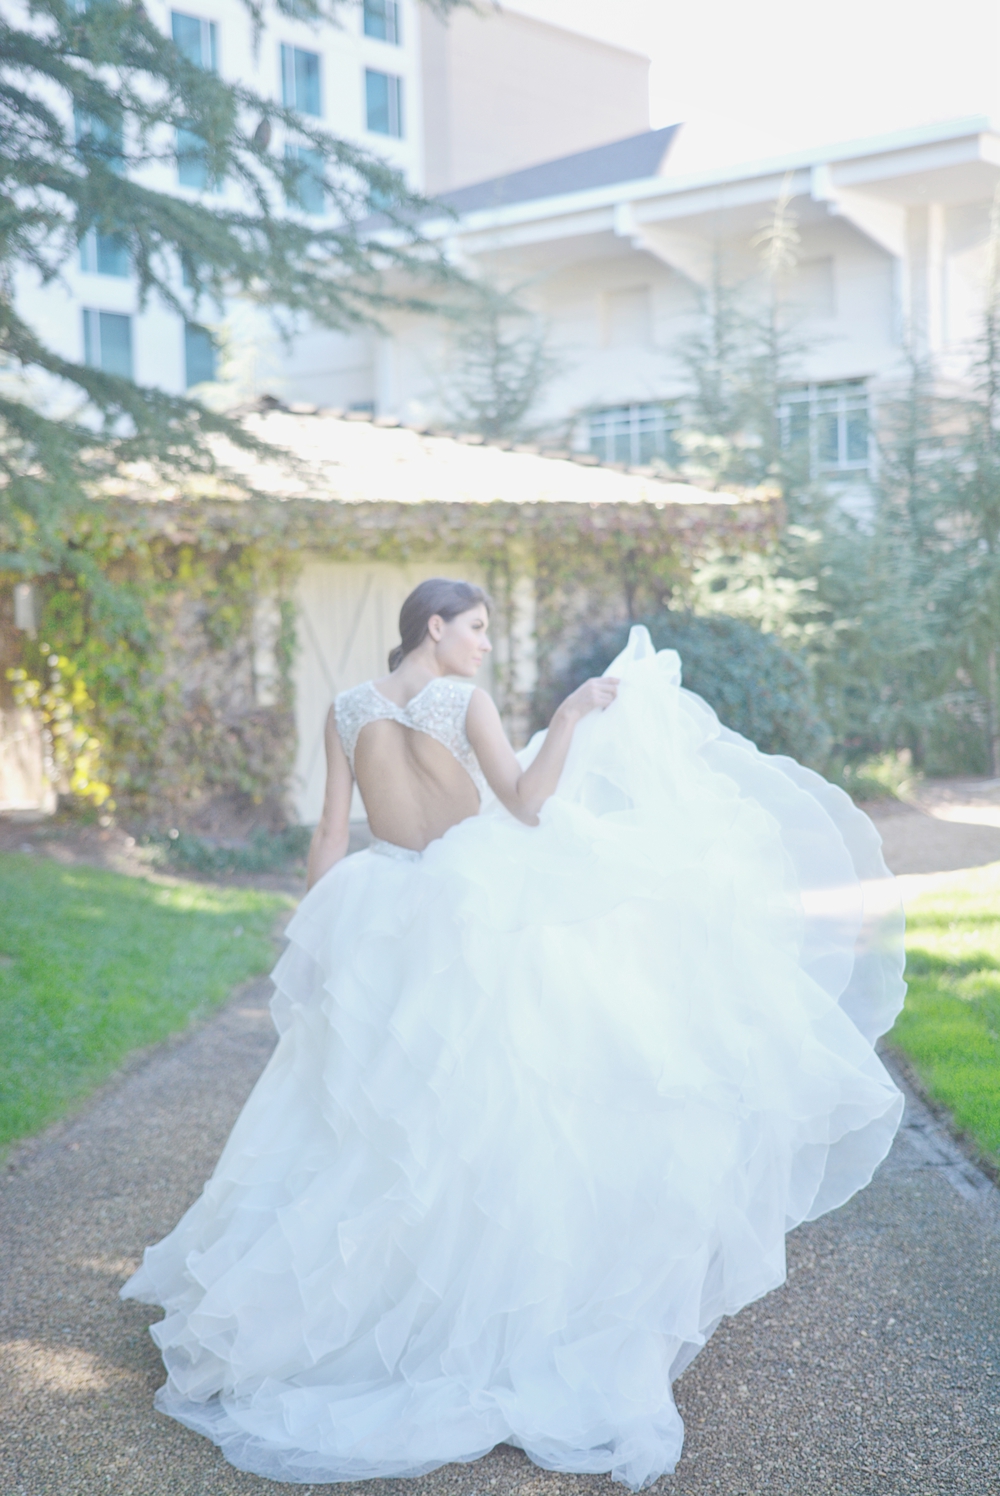 Wedding at Villa Christina at Hyatt Perimiter - Anya Bridal Catalog - Six Hearts Photography016